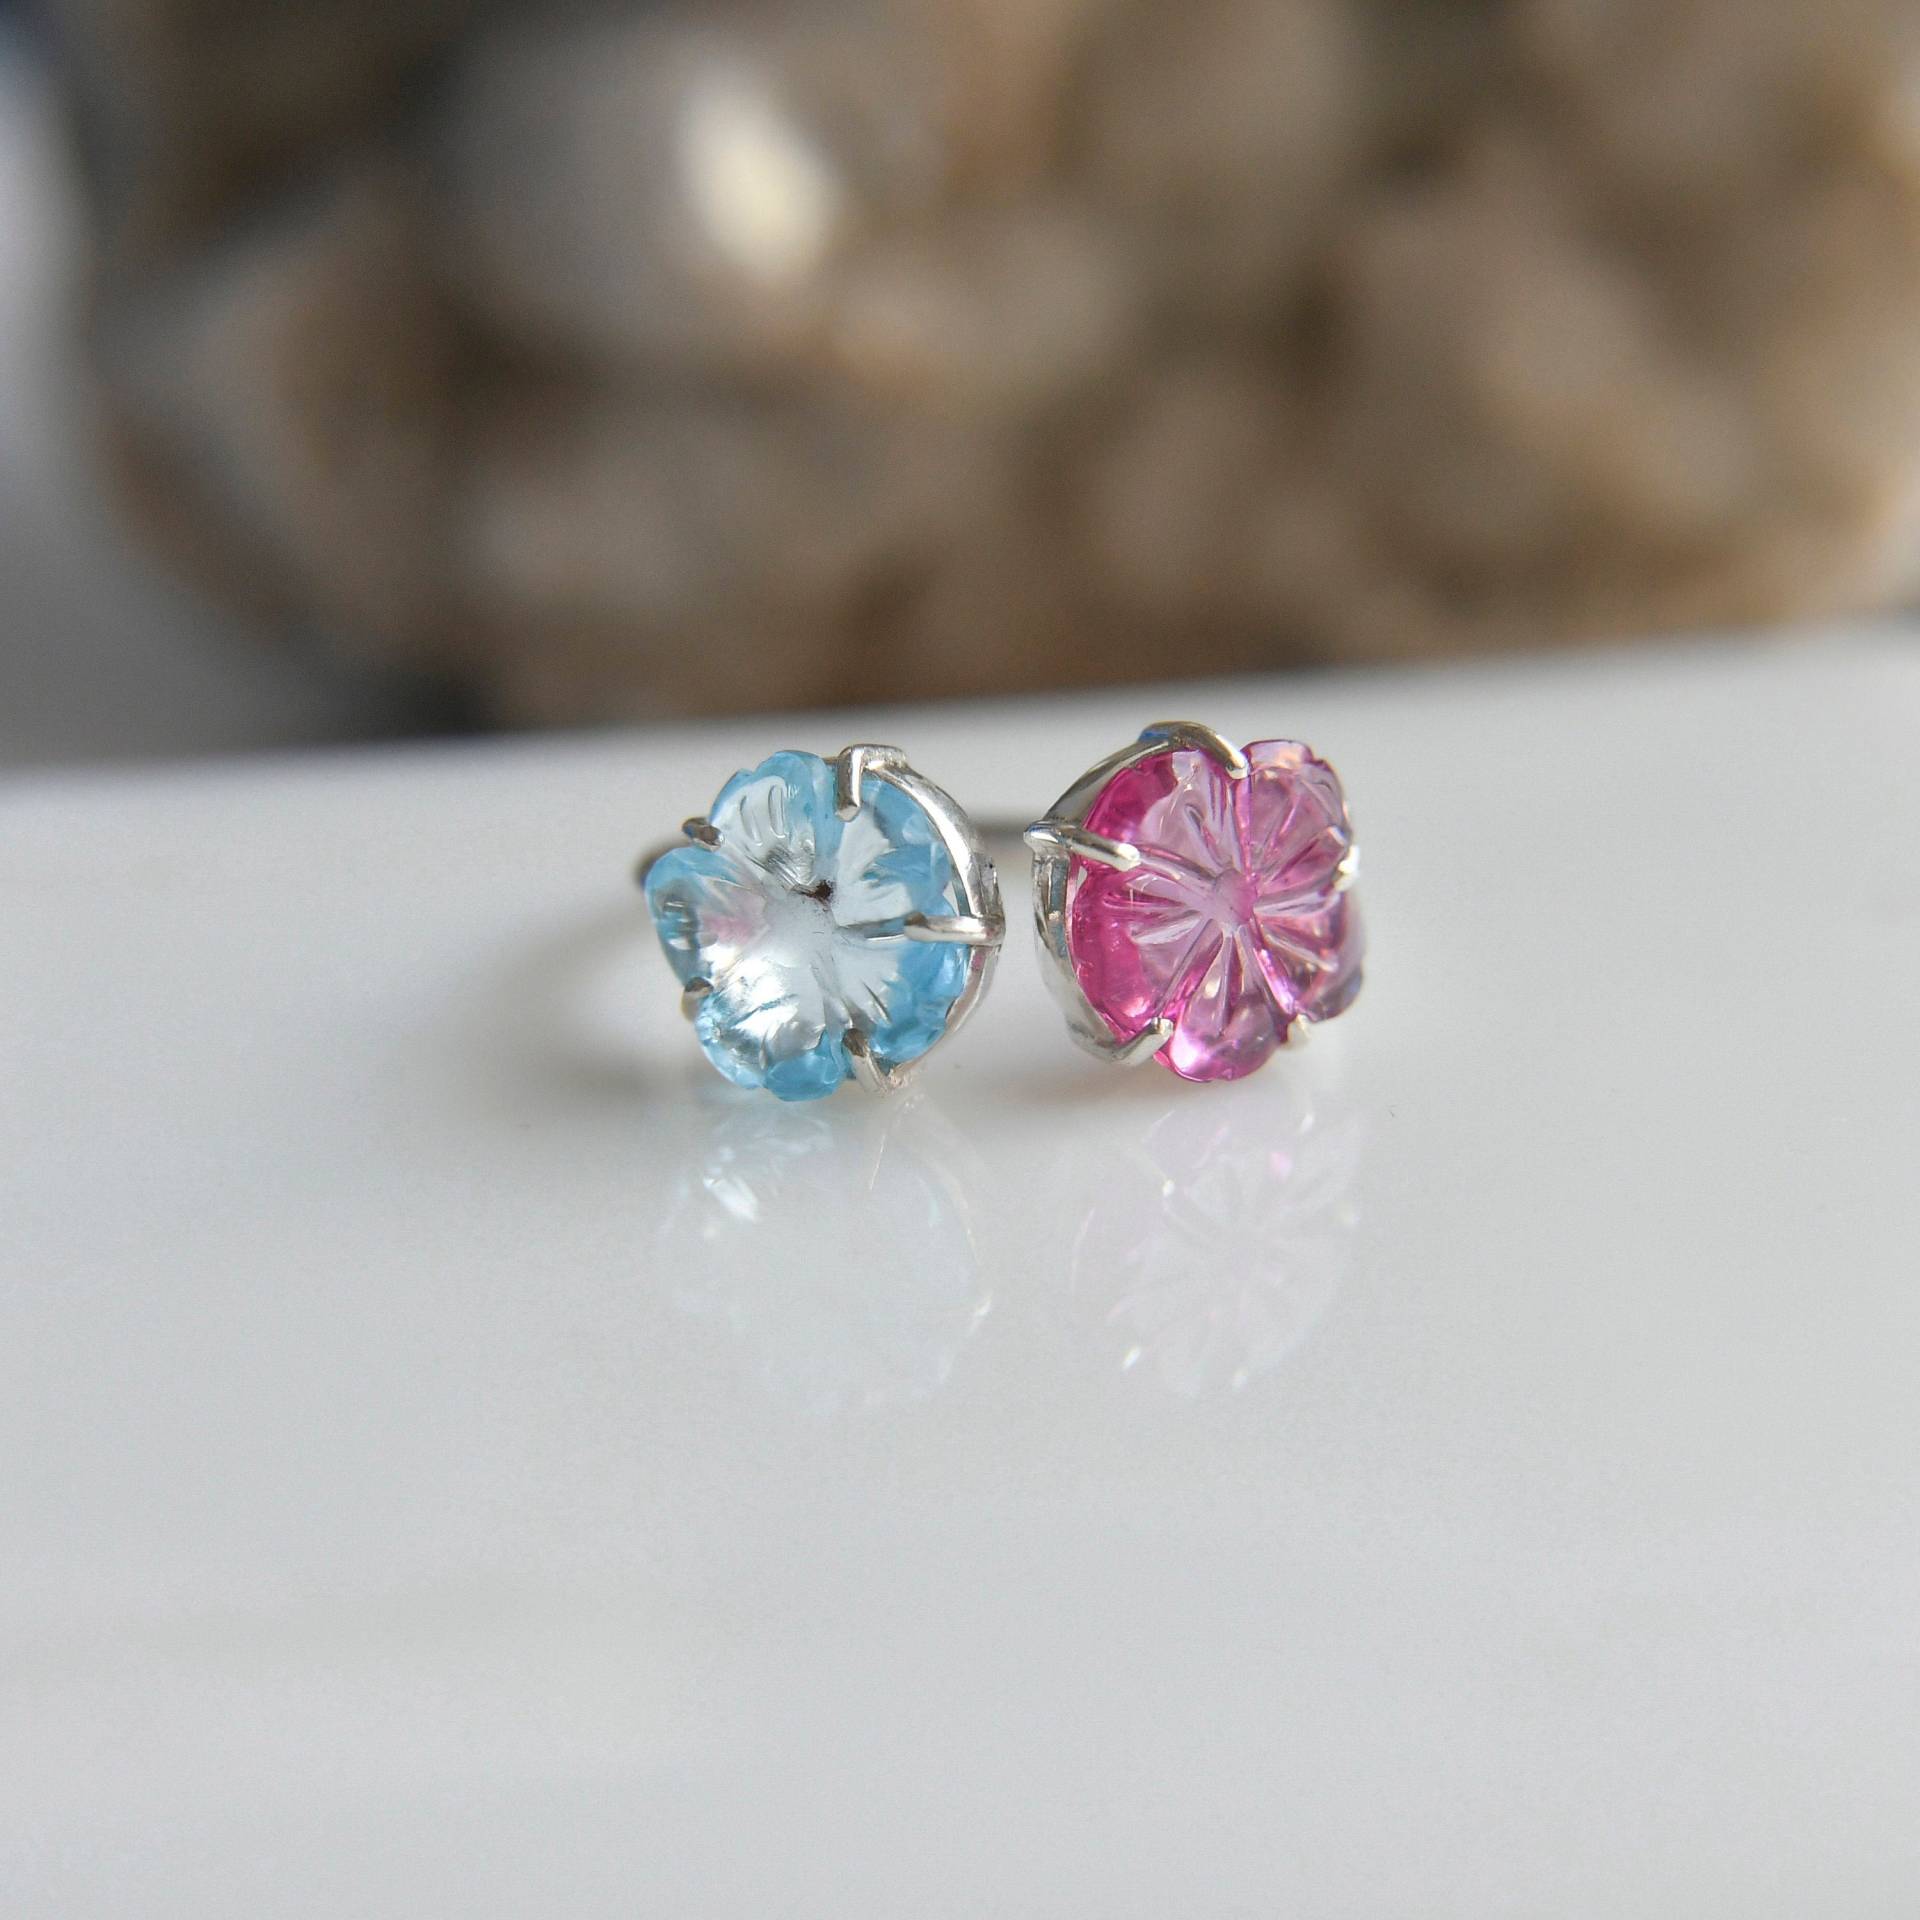 Designer Ringe Für Mädchen, 925 Sterling Silber Ringe, Turmalin Blume, Blautopas Pink Verstellbare Handmade von PenazBySatyug